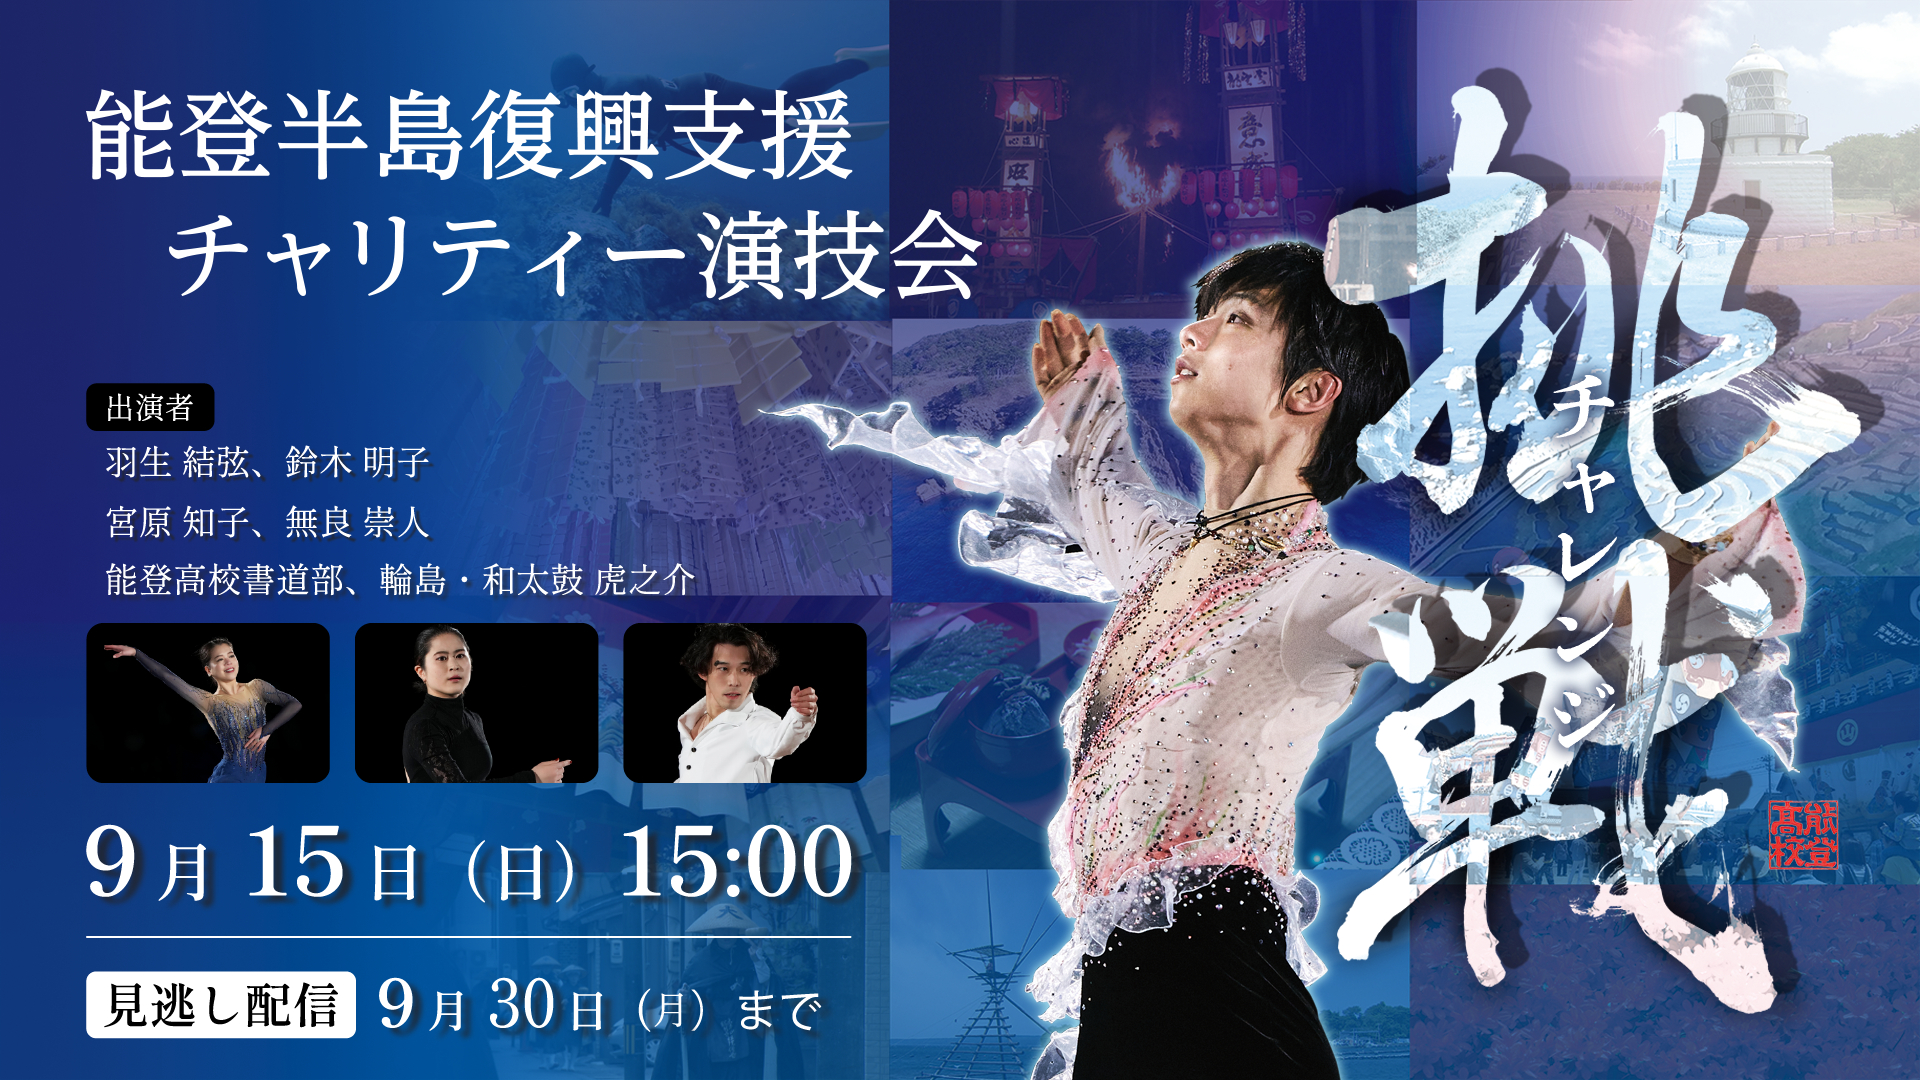 羽生結弦ら出演の能登半島復興支援特別演技会を9/15石川県からライブ配信する。